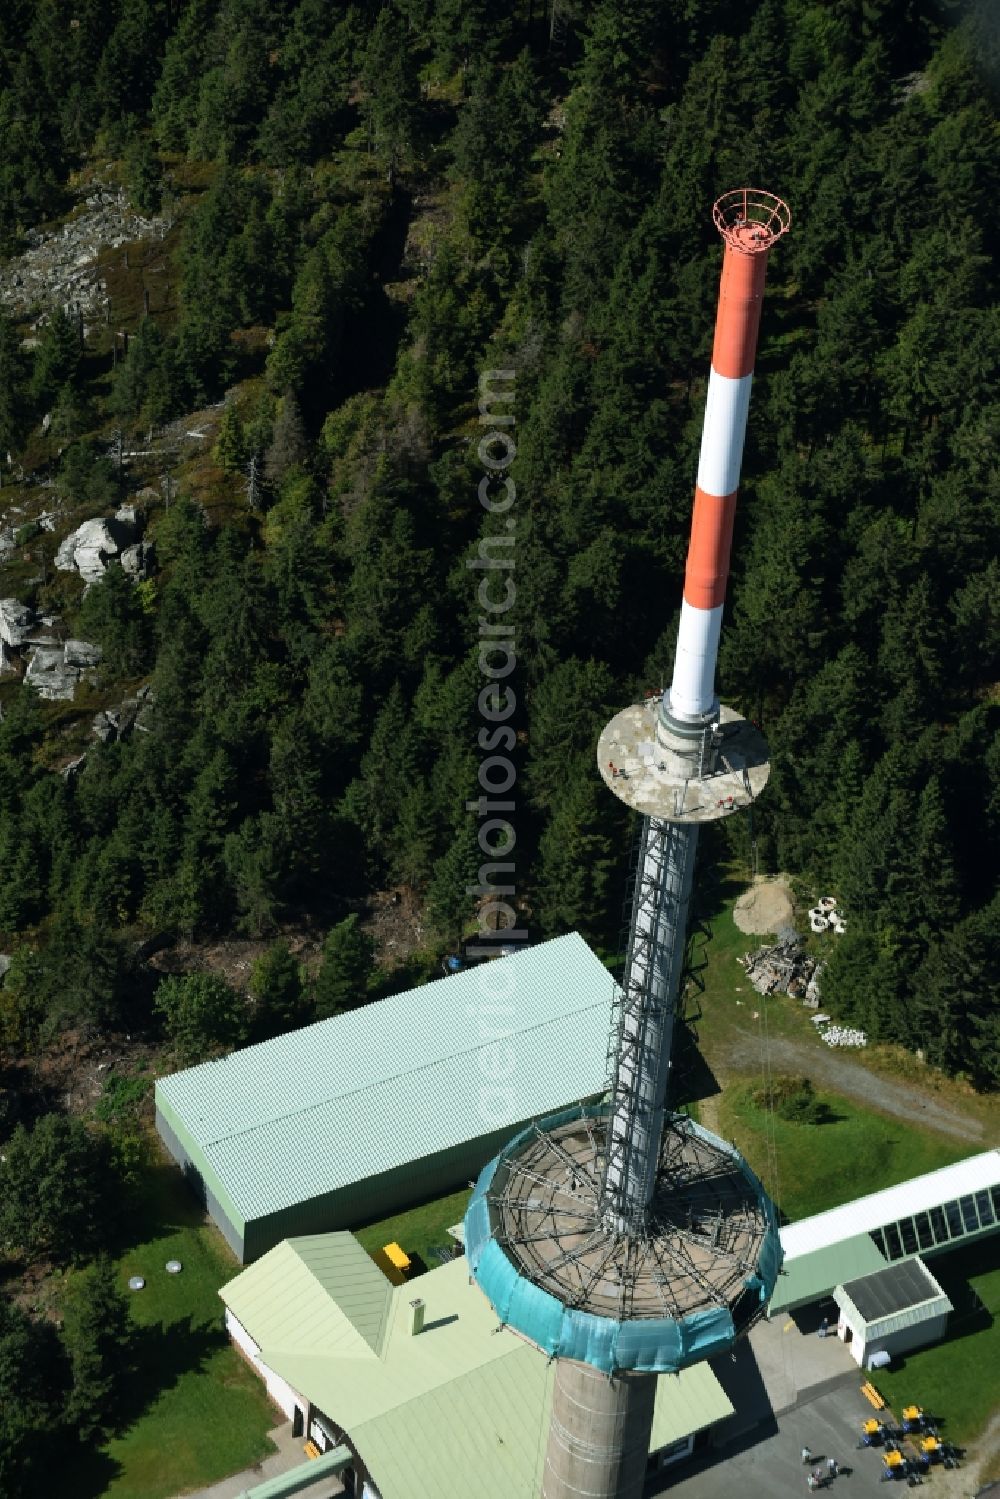 Aerial photograph Bischofsgrün - Antenna and transmission tower radio mast Sender Ochsenkopf in Bischofsgruen in the state Bavaria